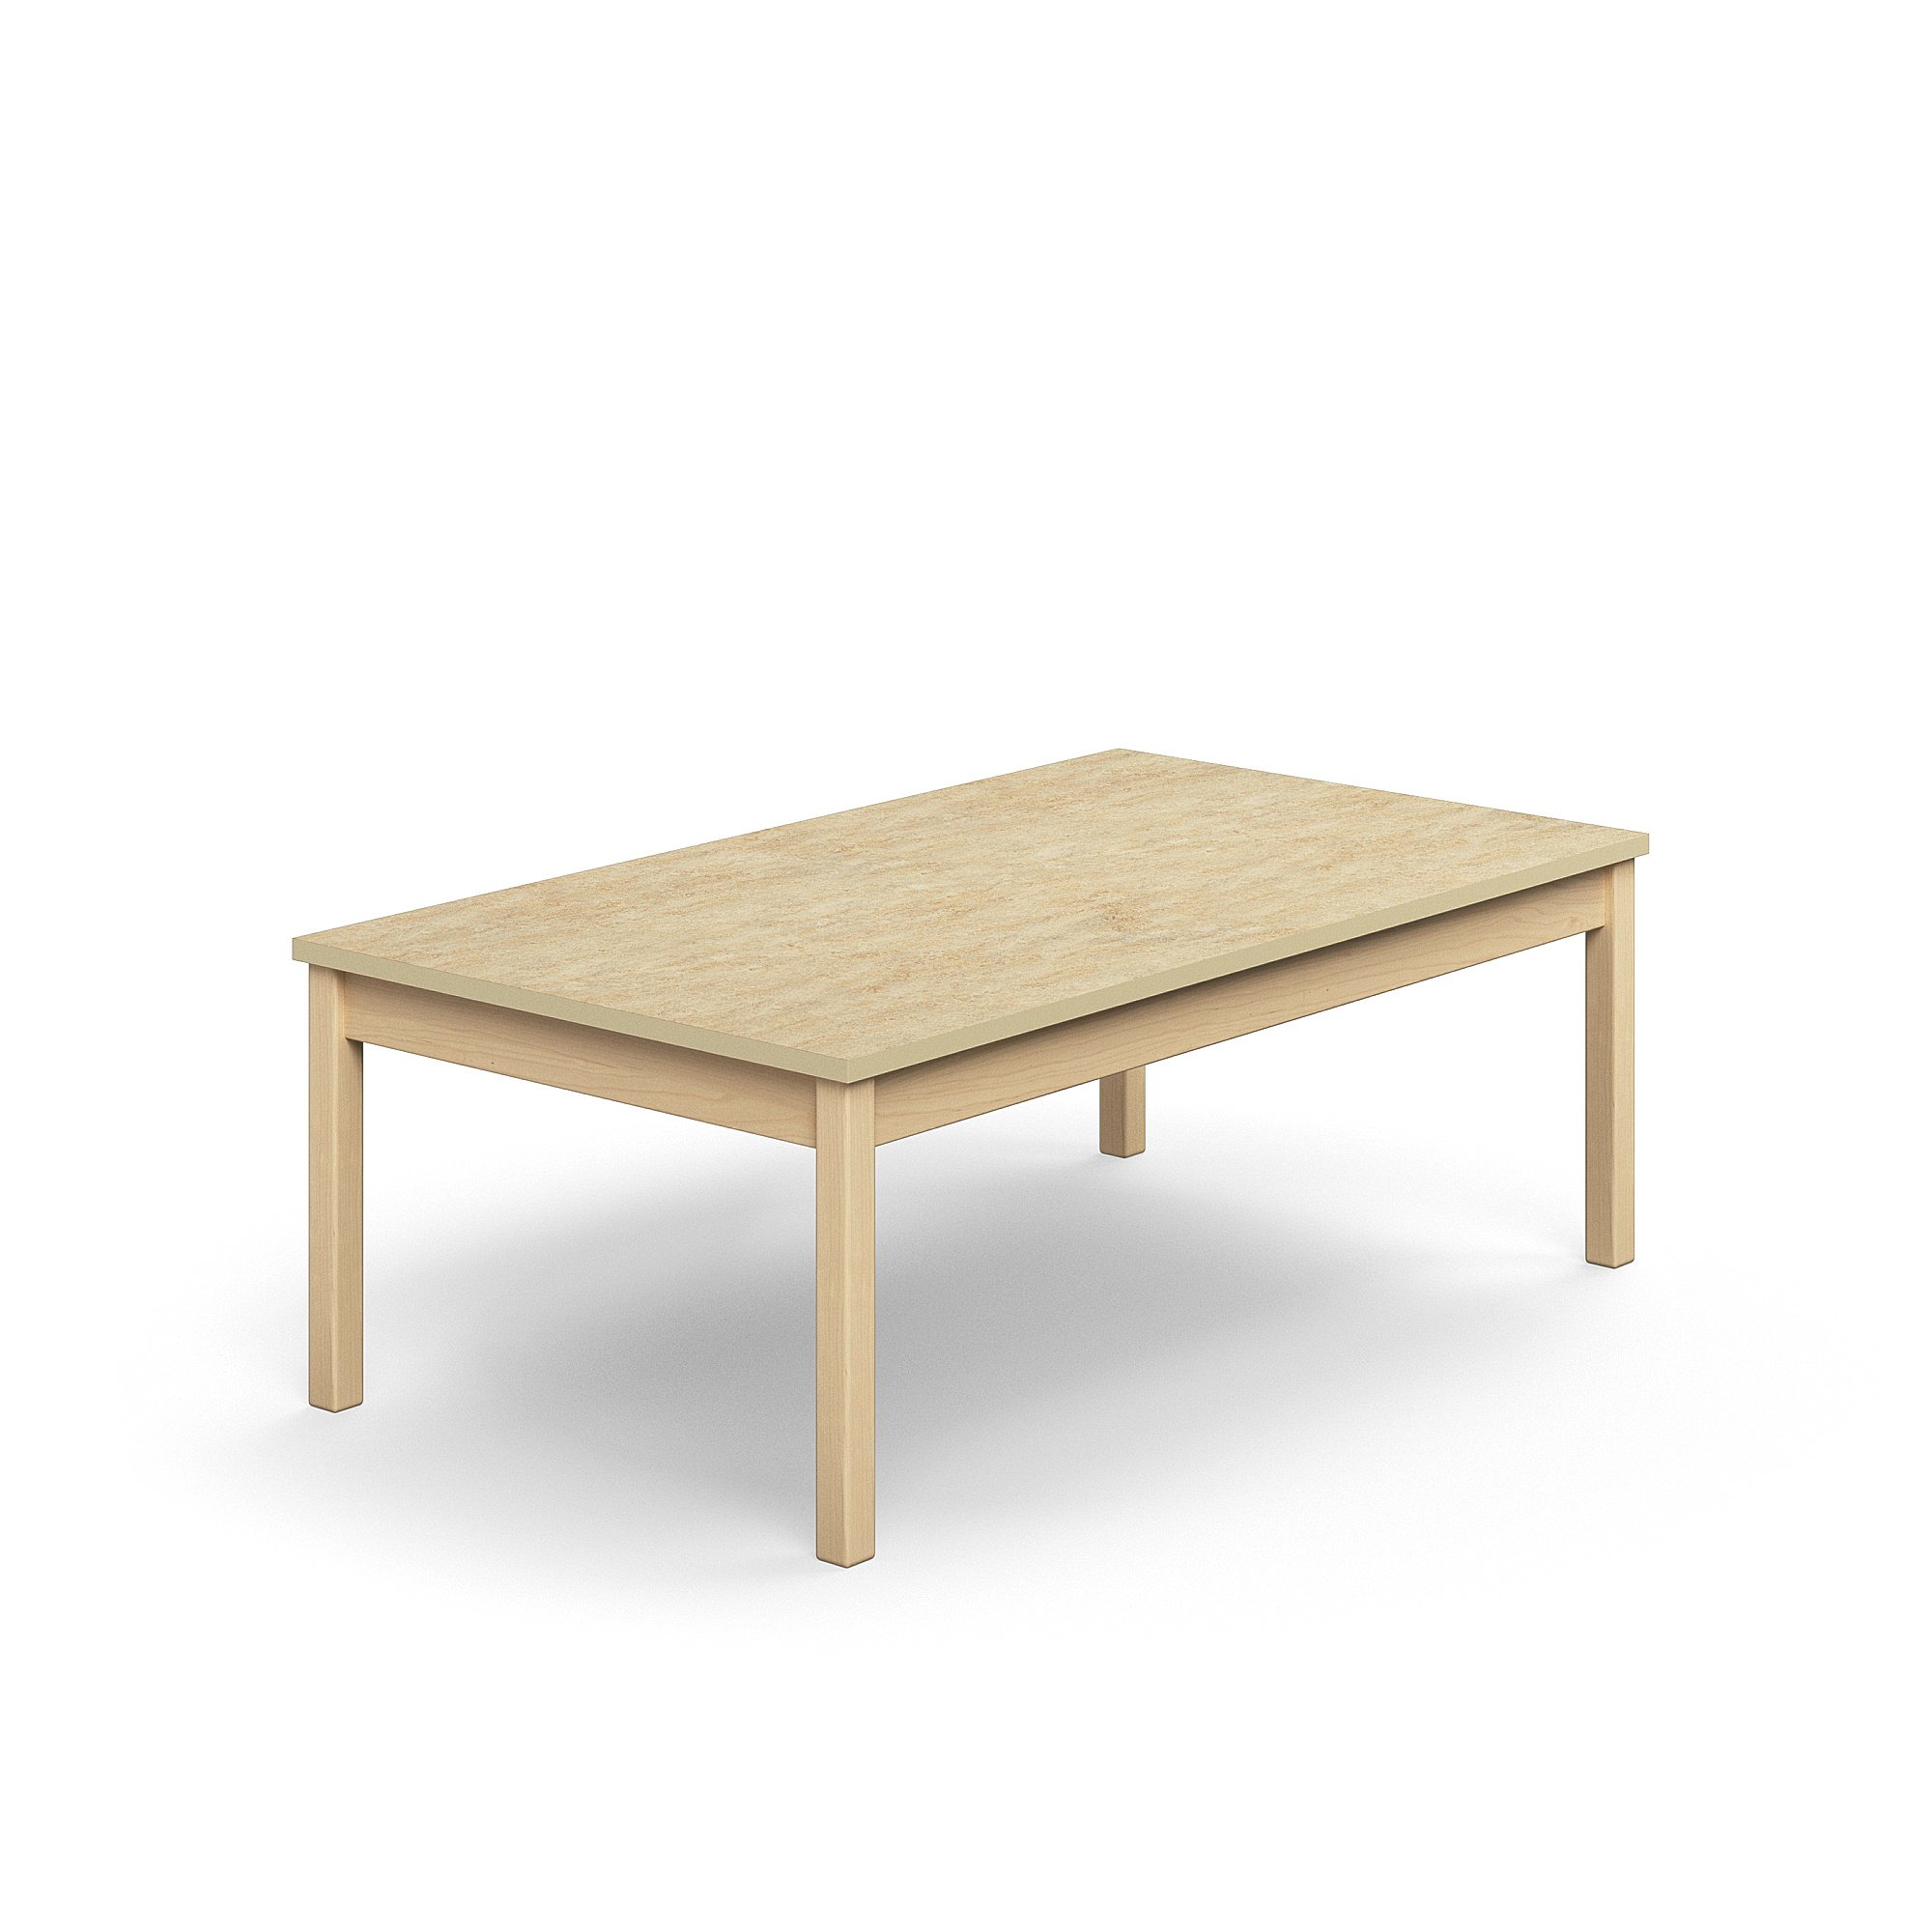 Stůl DECIBEL, 1400x800x530 mm, akustické linoleum, bříza/béžová